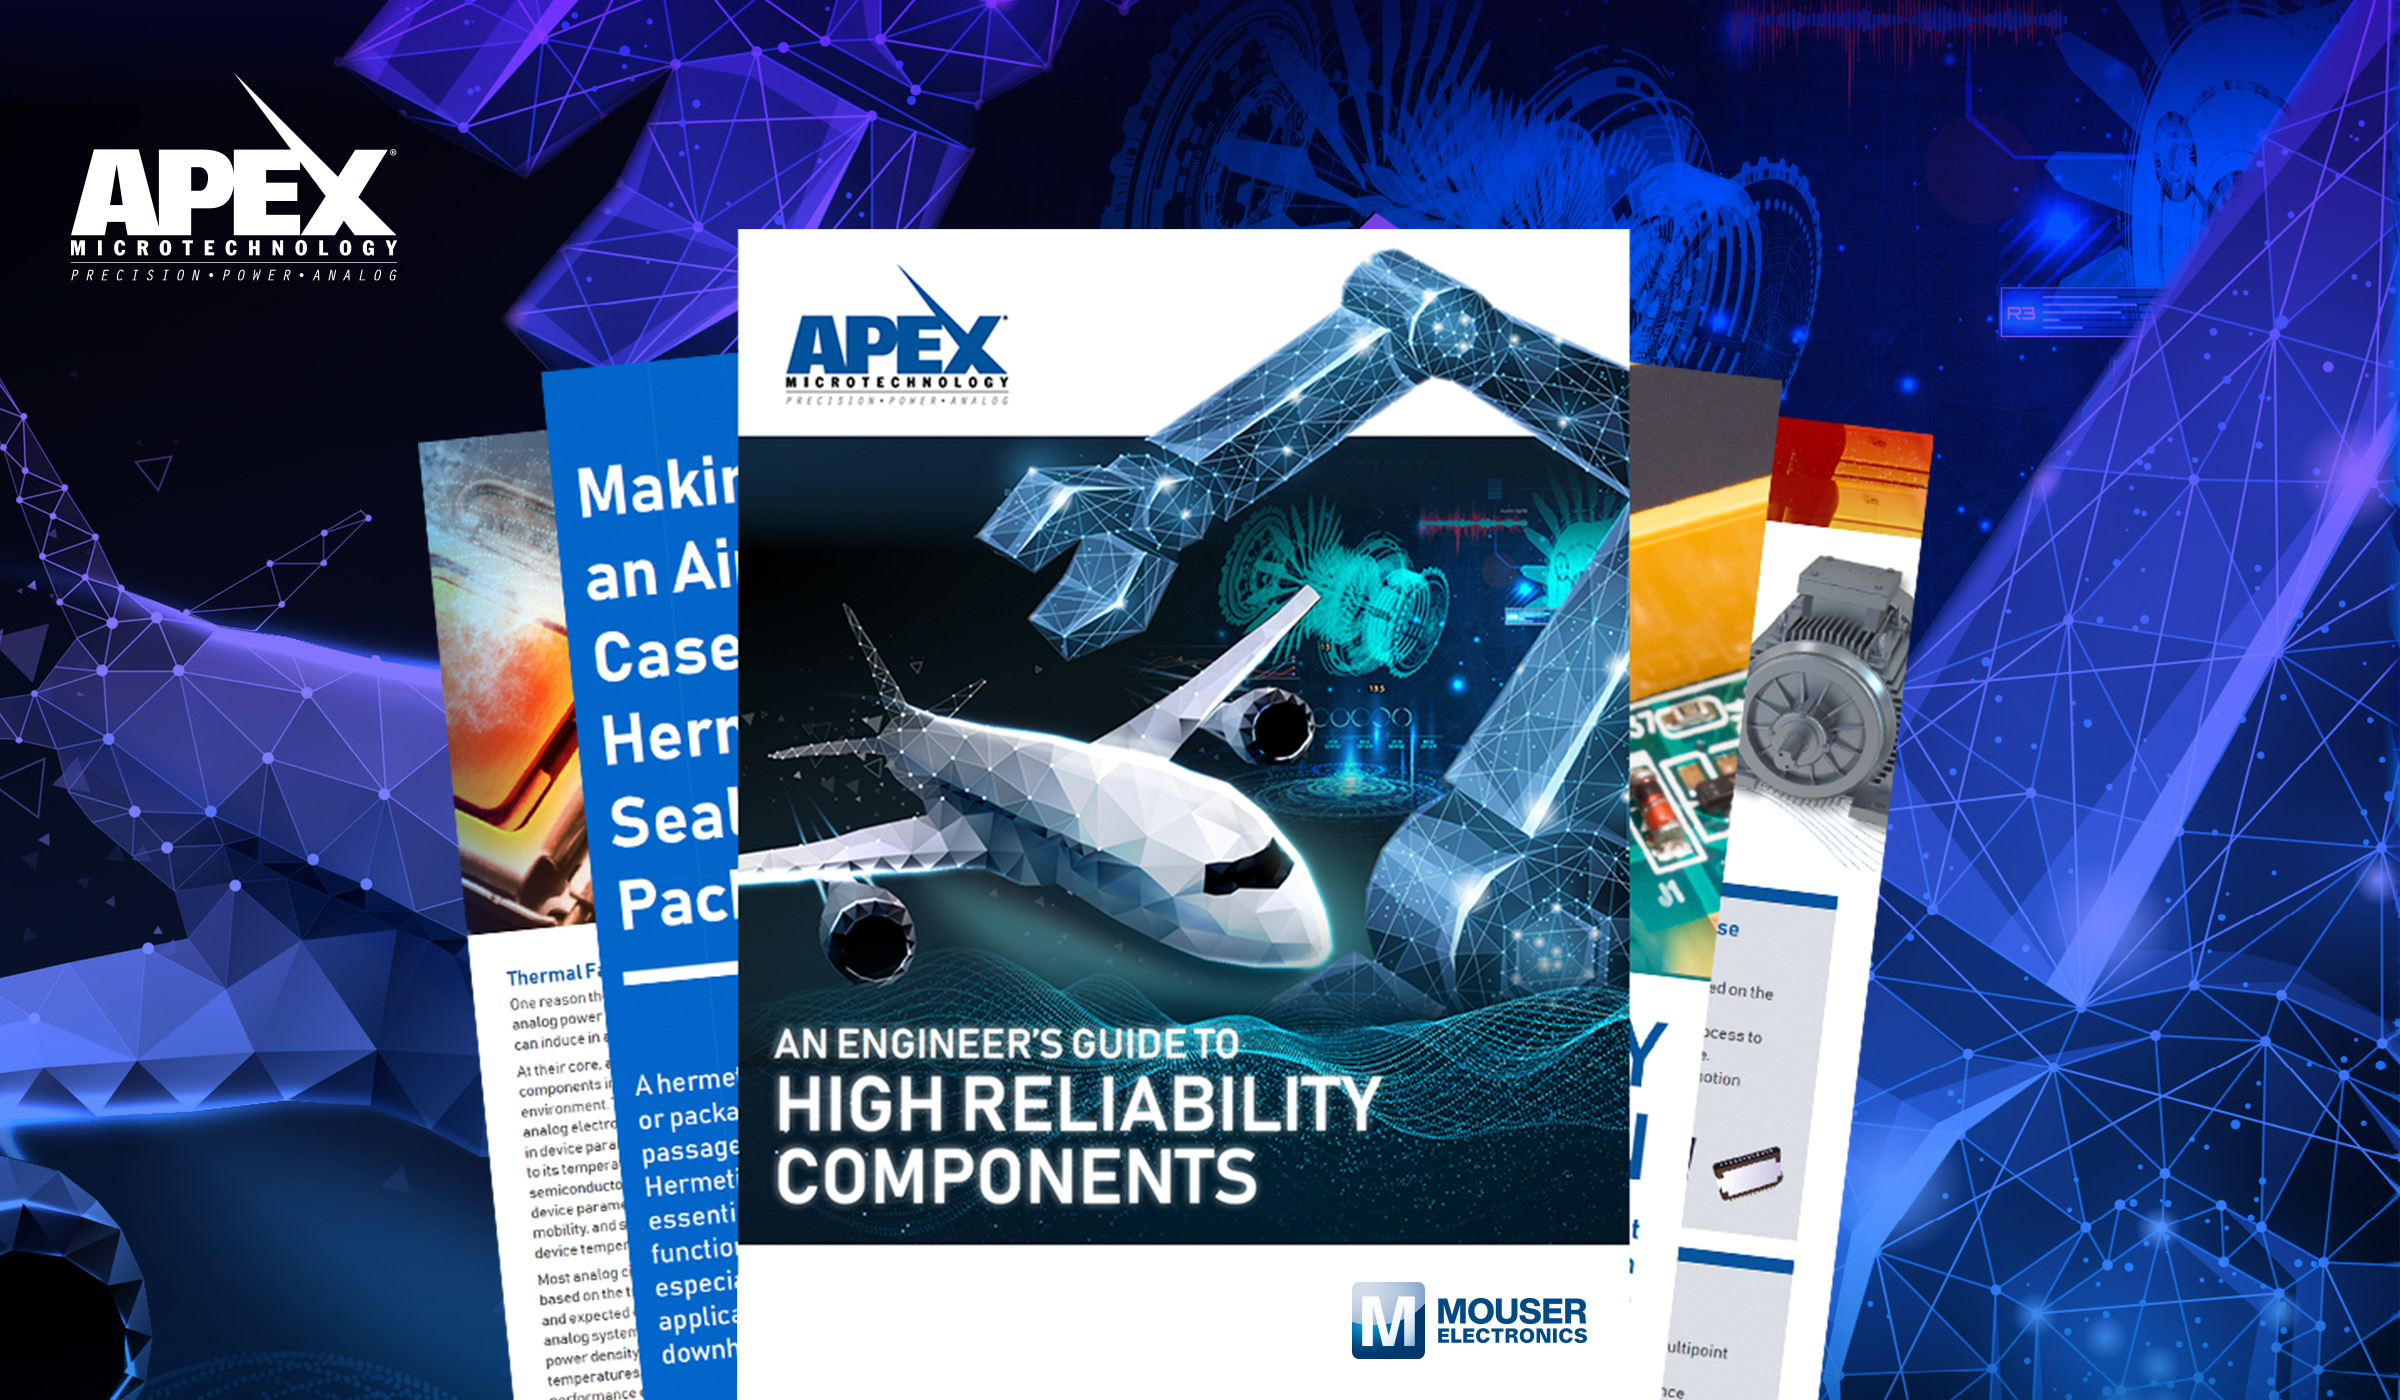 贸泽联手Apex Microtechnology推出全新电子书 探索高可靠性设计中的挑战与难点